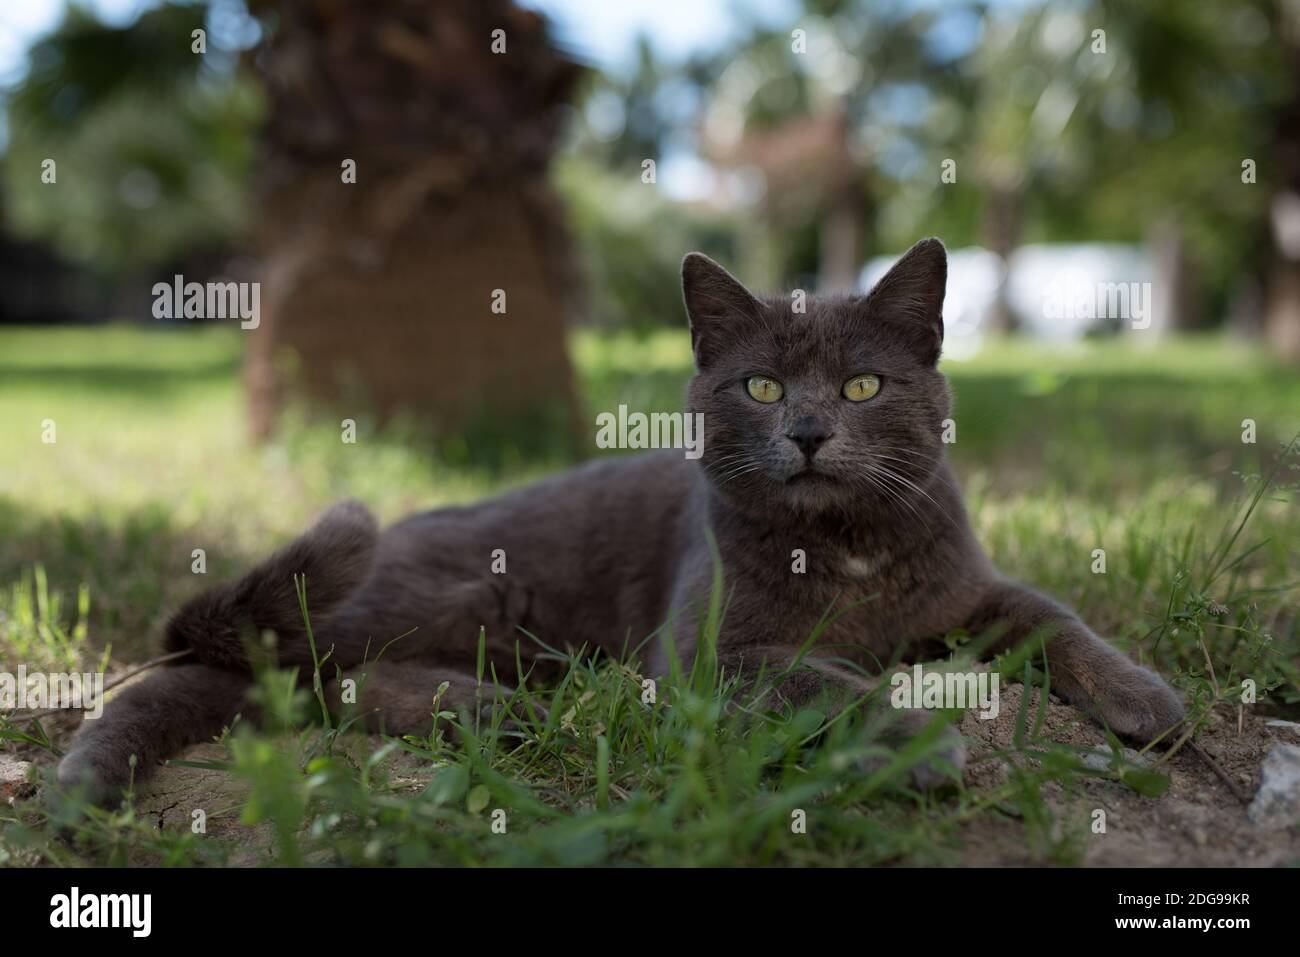 Bagno turco gatto randagio su hotel area terreno ralxing giardino nella parte anteriore del palm tree Foto Stock